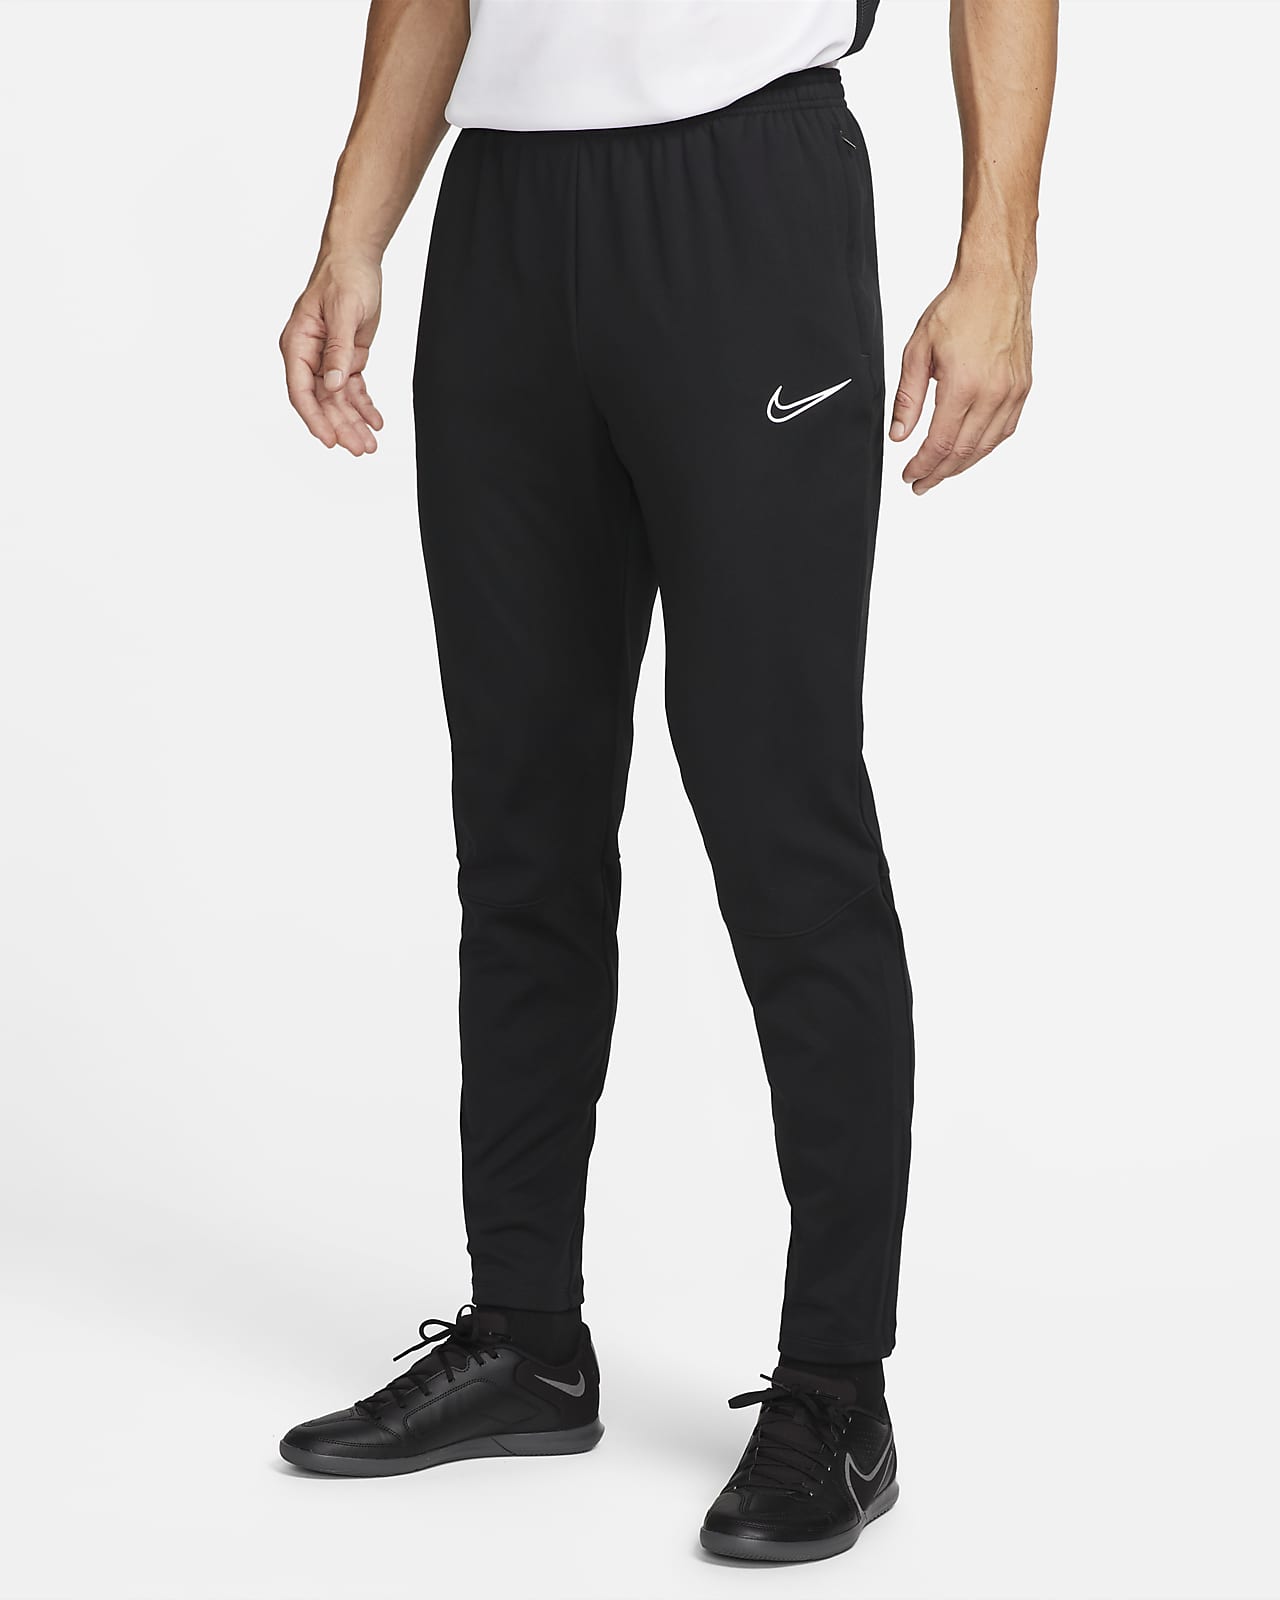 Nike Therma FIT Academy Winter Warrior Pantalón de fútbol de tejido Knit - Hombre